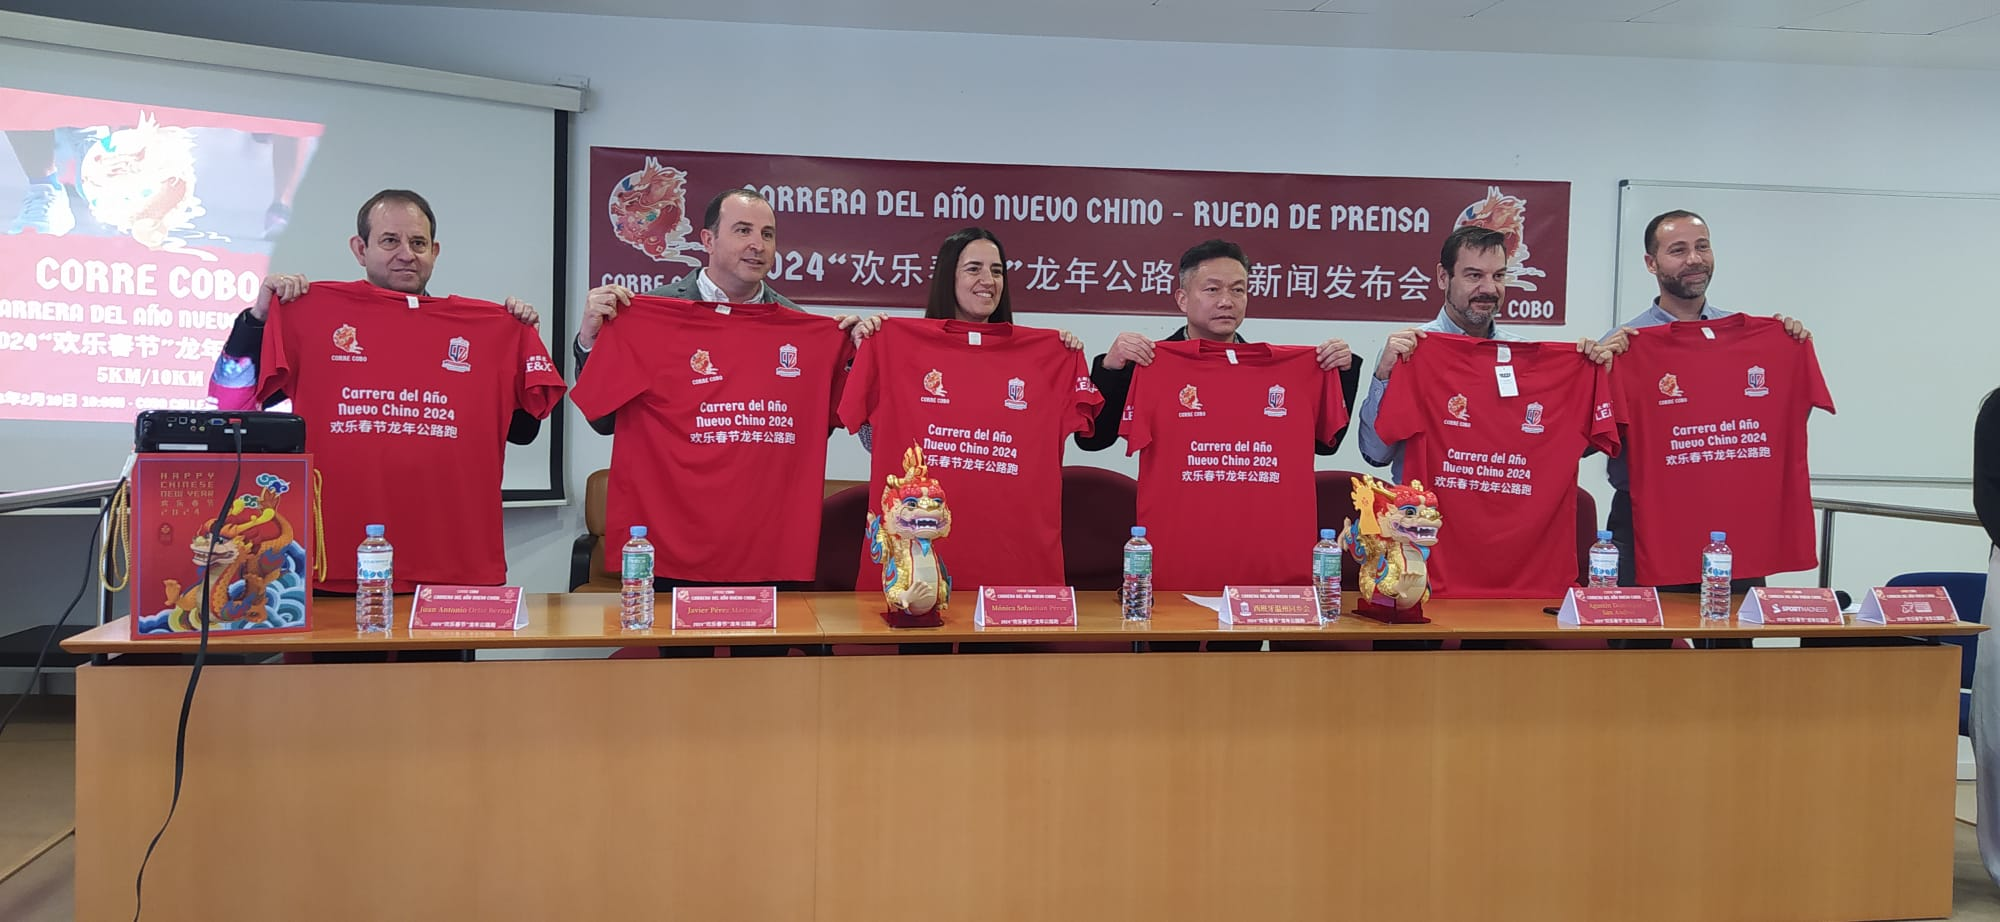 Unas 800 personas participarán en la carrera solidaria "Corre Cobo" en Fuenlabrada, recaudando fondos para AFAMSO. Deporte, solidaridad, comunidad china, AFAMSO, Fuenlabrada.